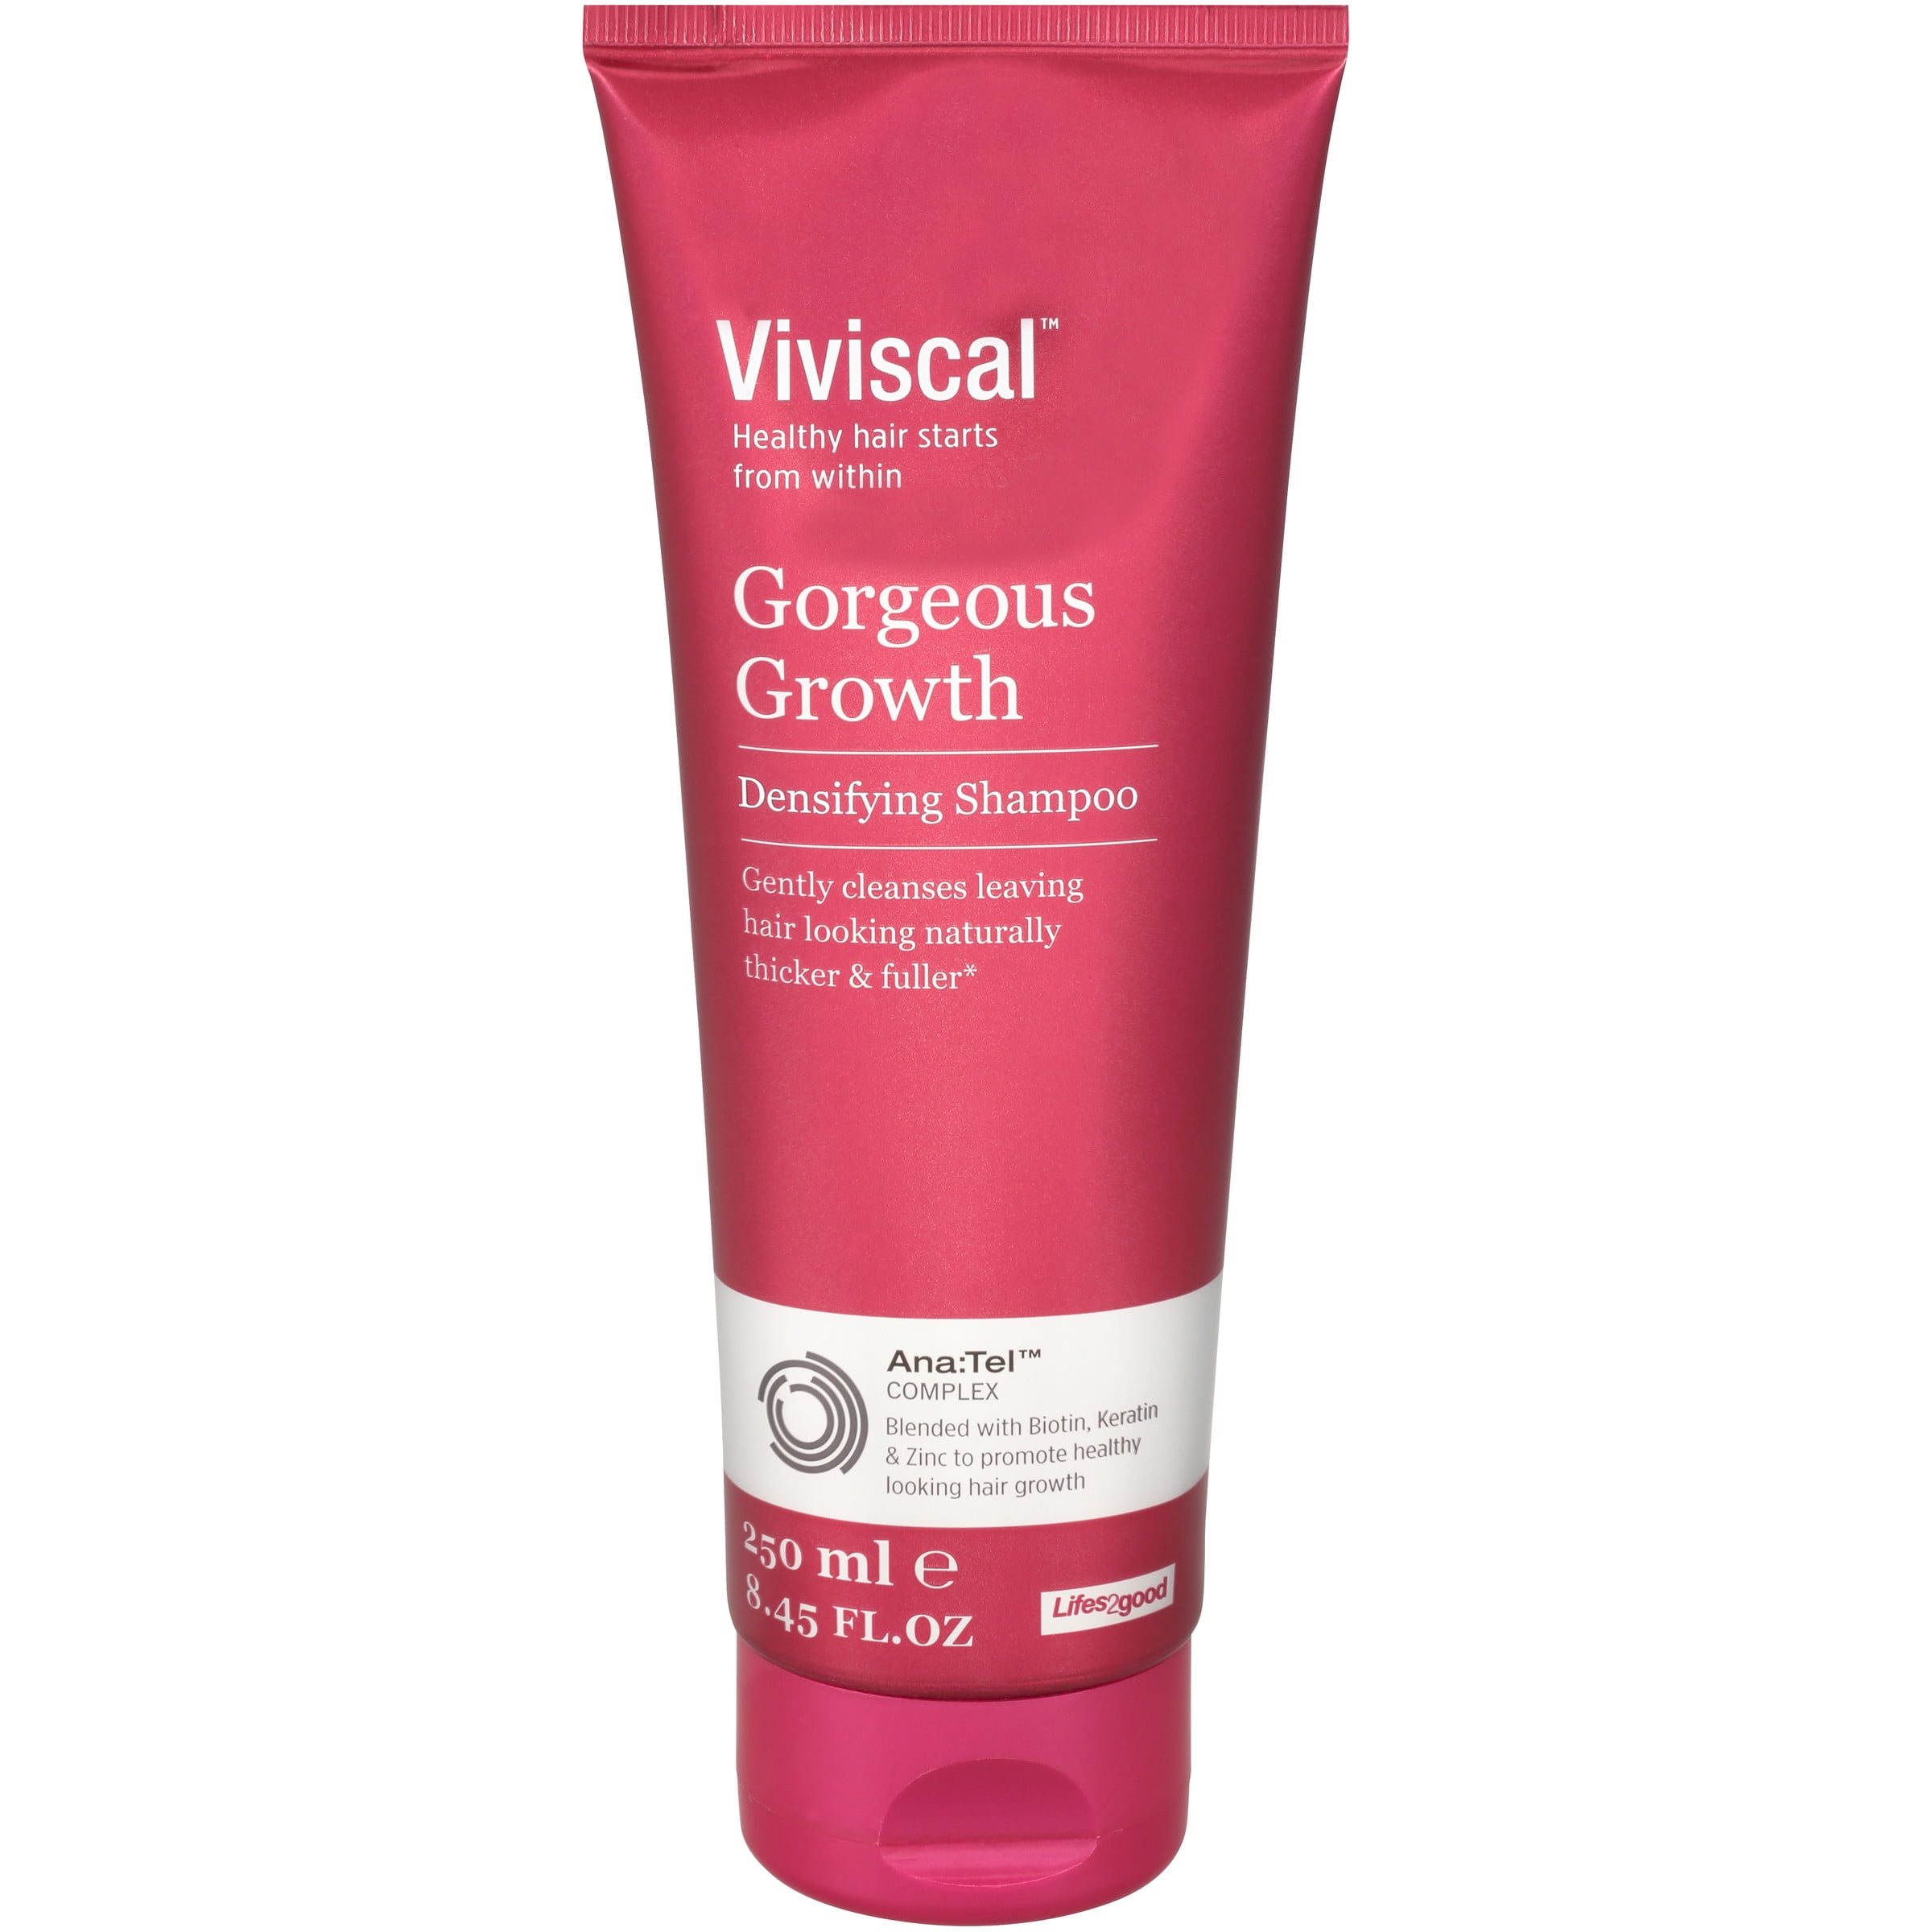 Viviscal Gorgeous Growth Densifying Shampoo, 250 ml / 8.45 fl. oz ...